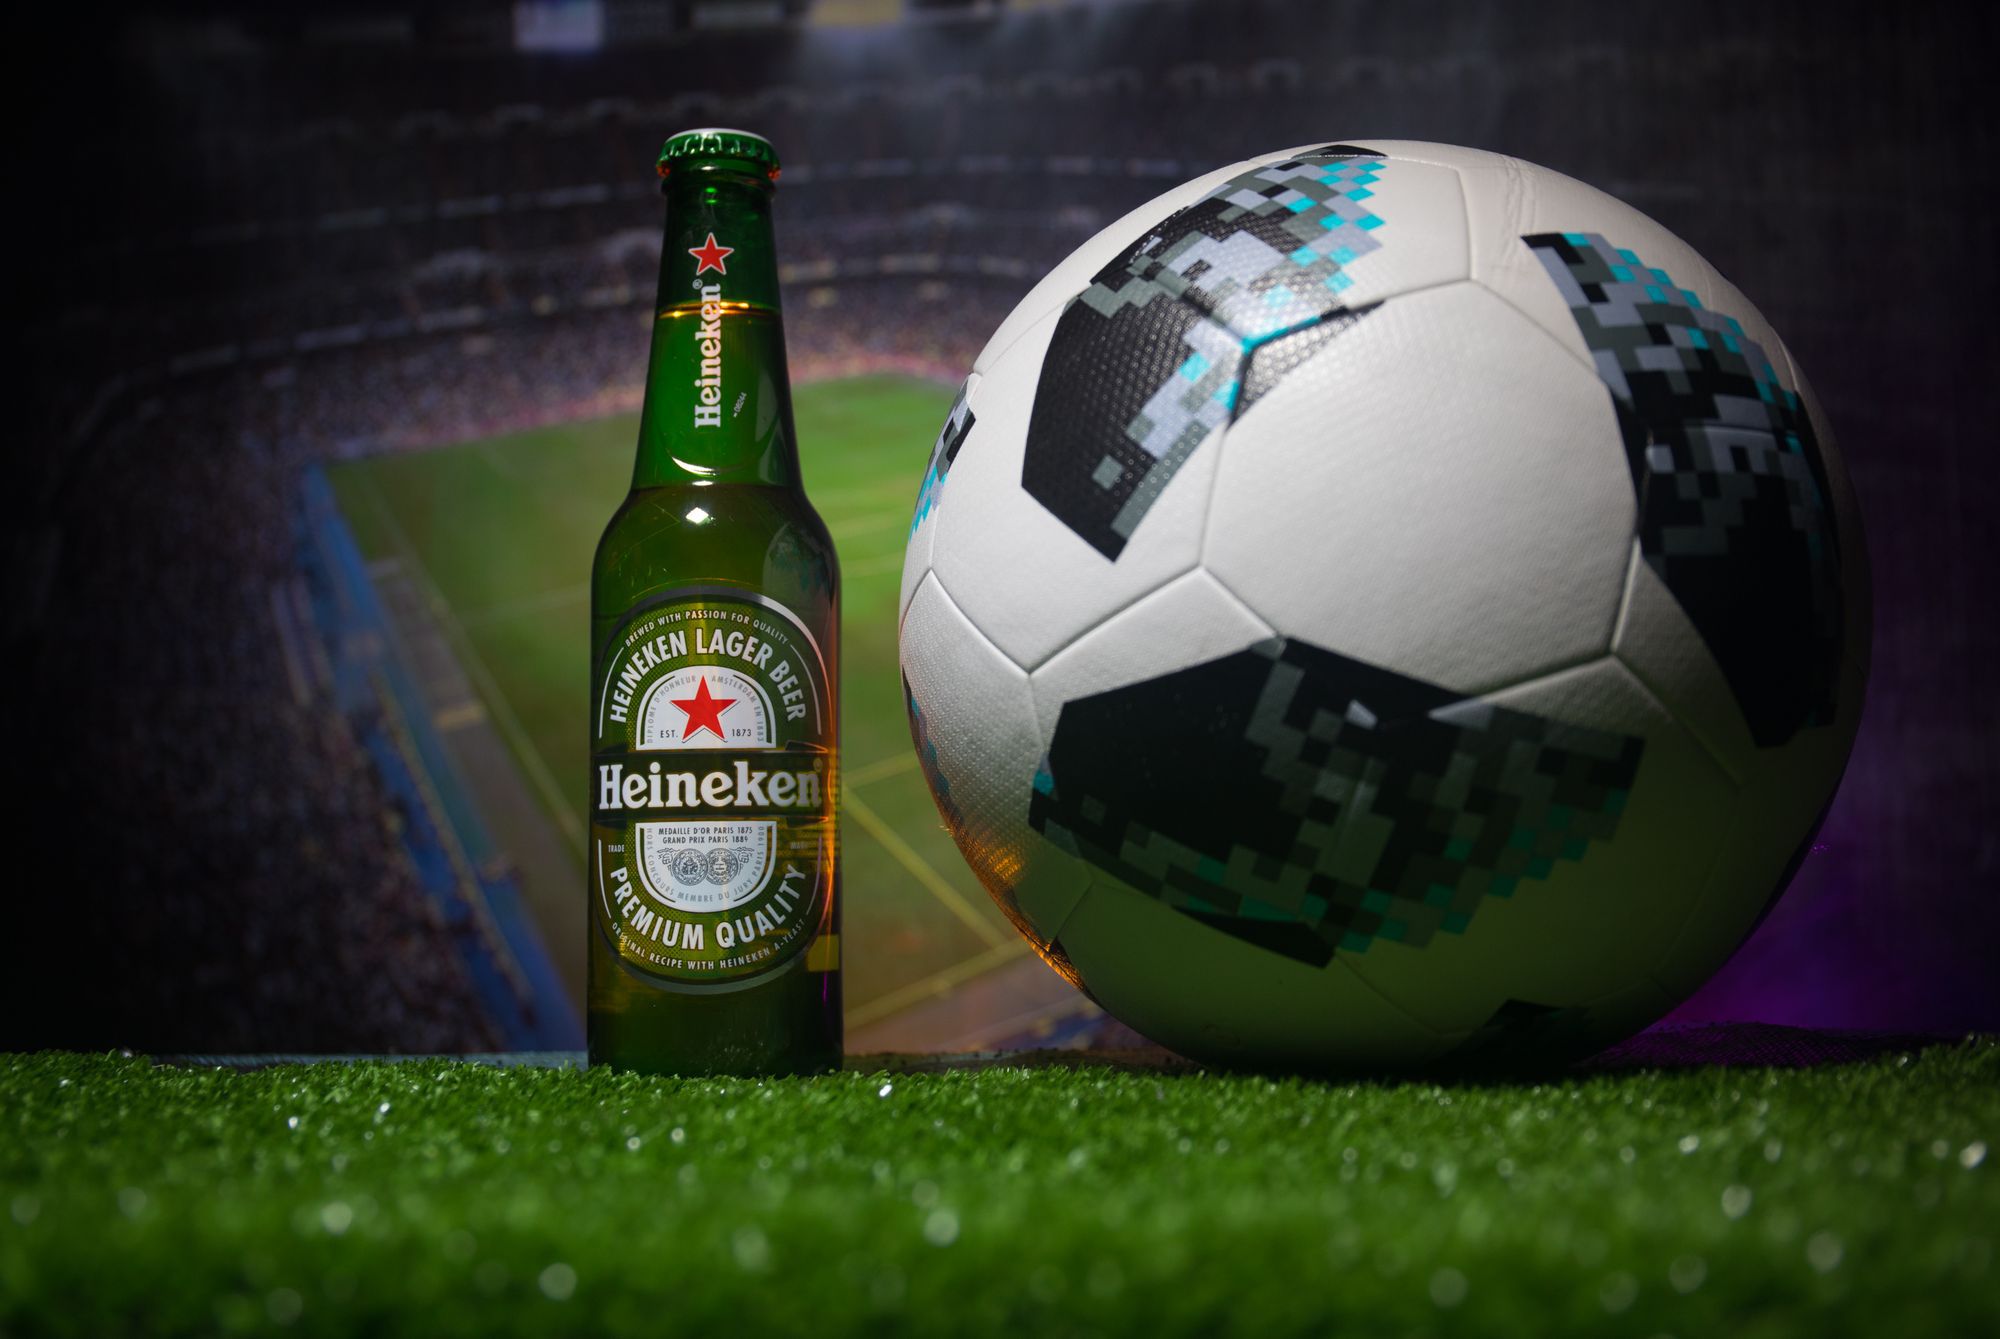 Muszlim játékosok elé nem tesznek alkoholmentes sört a szervezők /Fotó: Northfoto